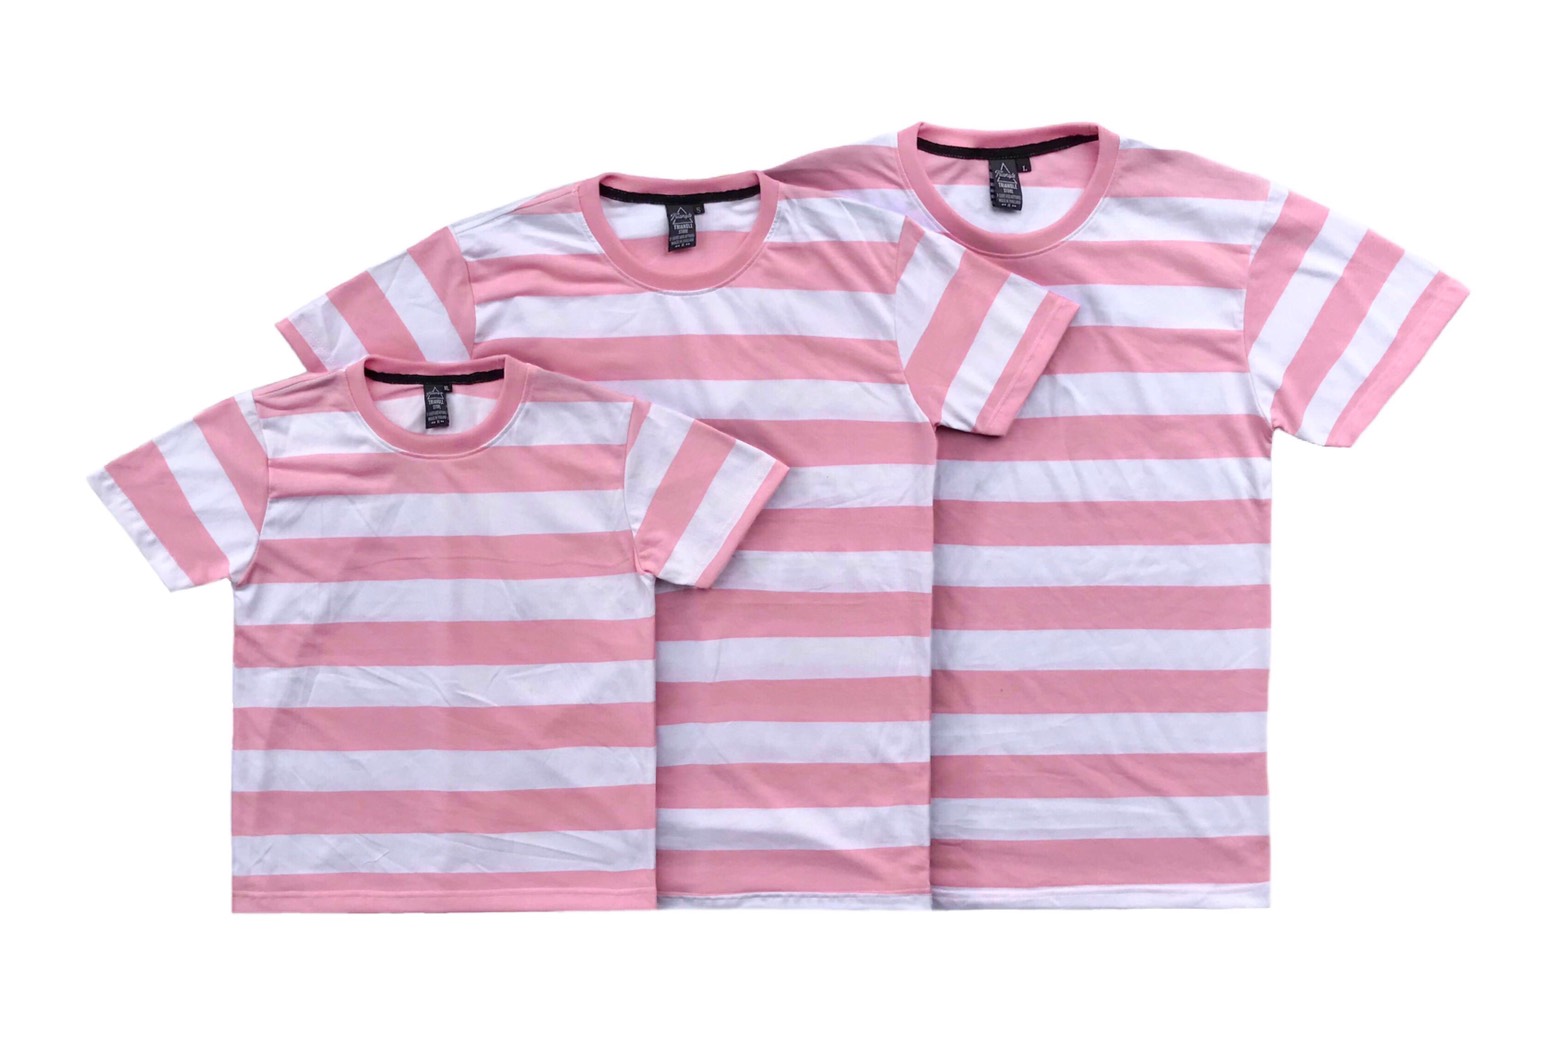 F061- เสื้อครอบครัว เสื้อเด็ก เสื้อทีม เสื้อสงกรานต์ เสื้อลายดอก เสื้อลายมัดย้อม เสื้อลายทาง เสื้อลายริ้ว สีสดใส